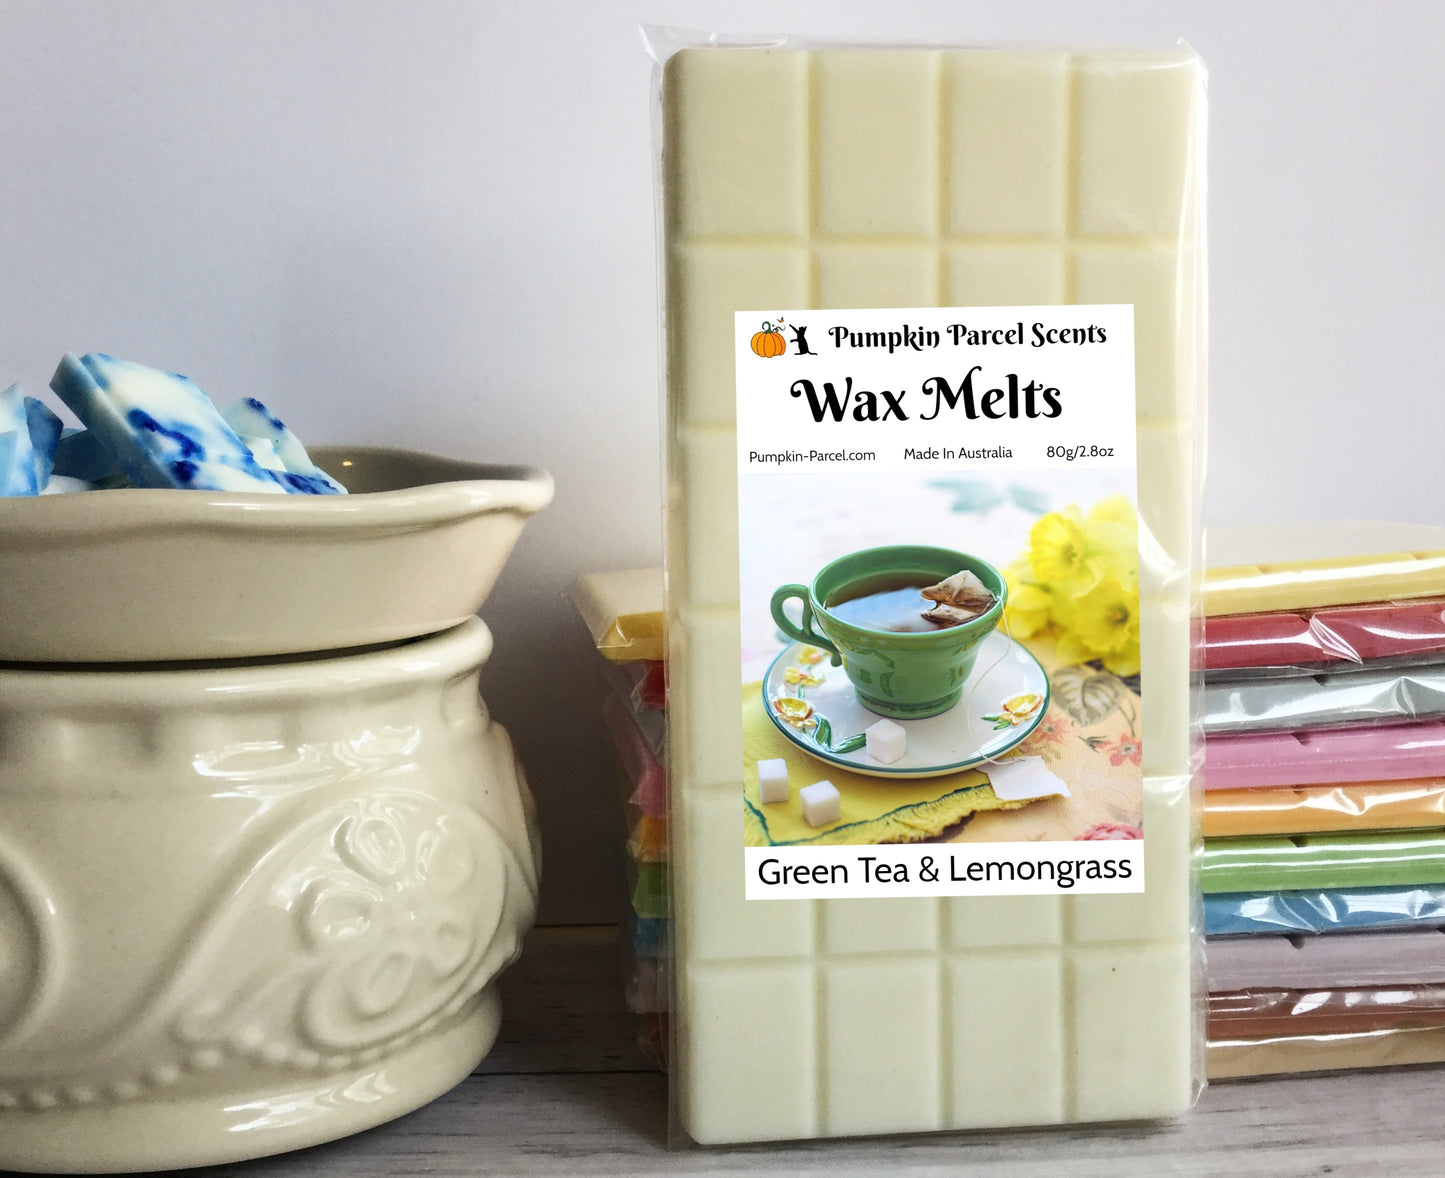 Green Tea & Lemongrass Wax Melts